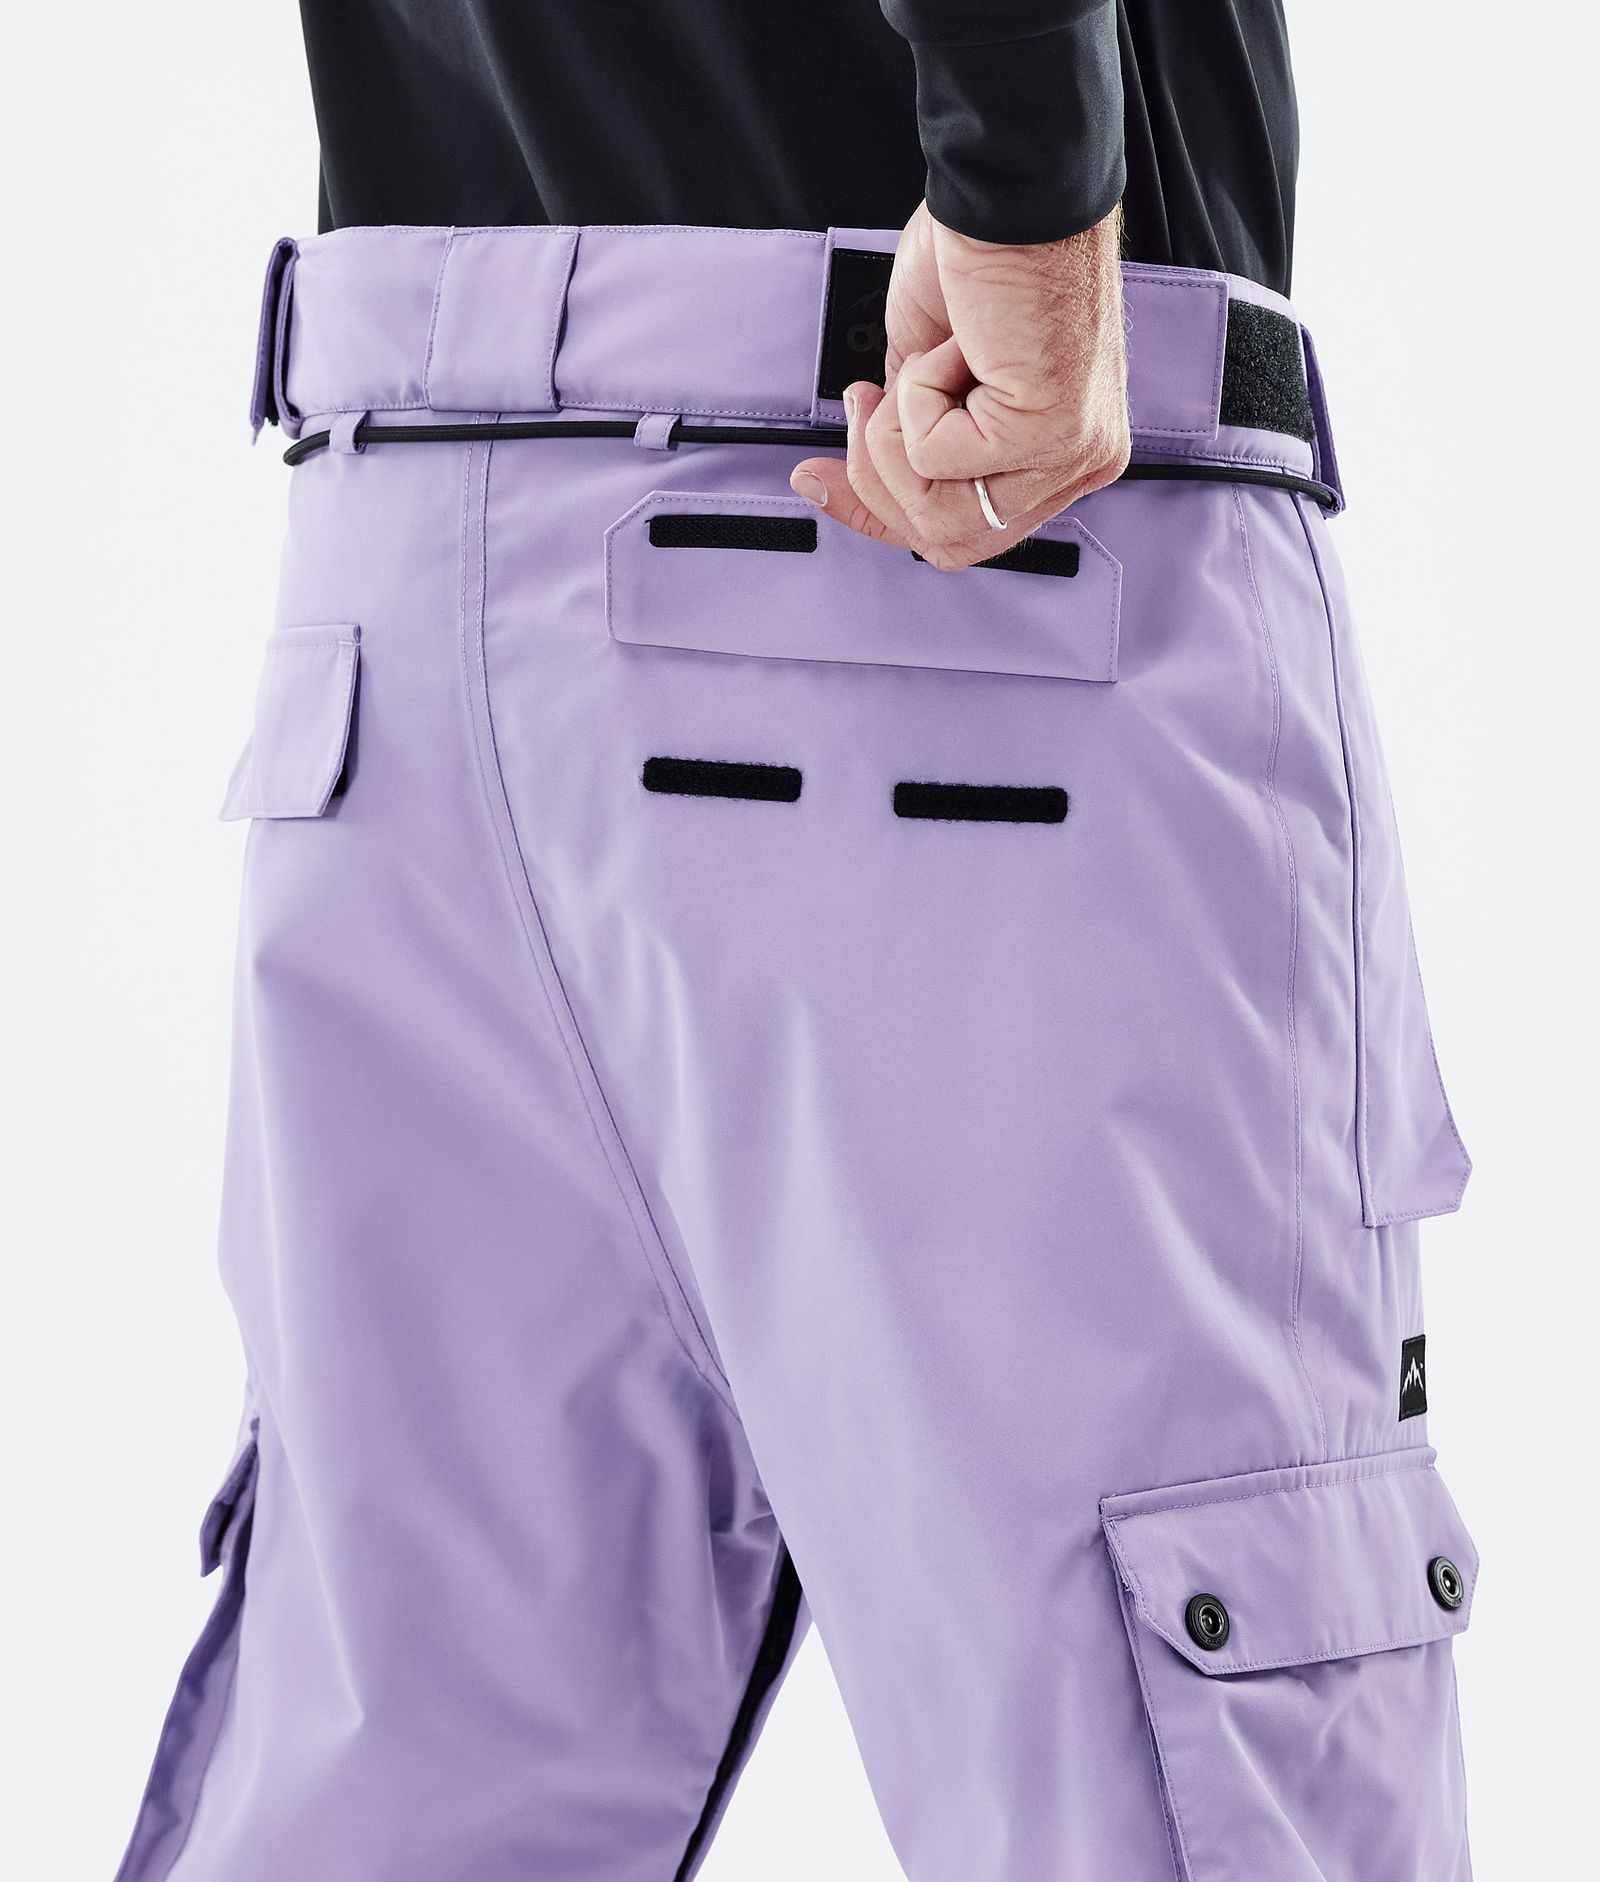 Iconic スキーパンツ メンズ Faded Violet